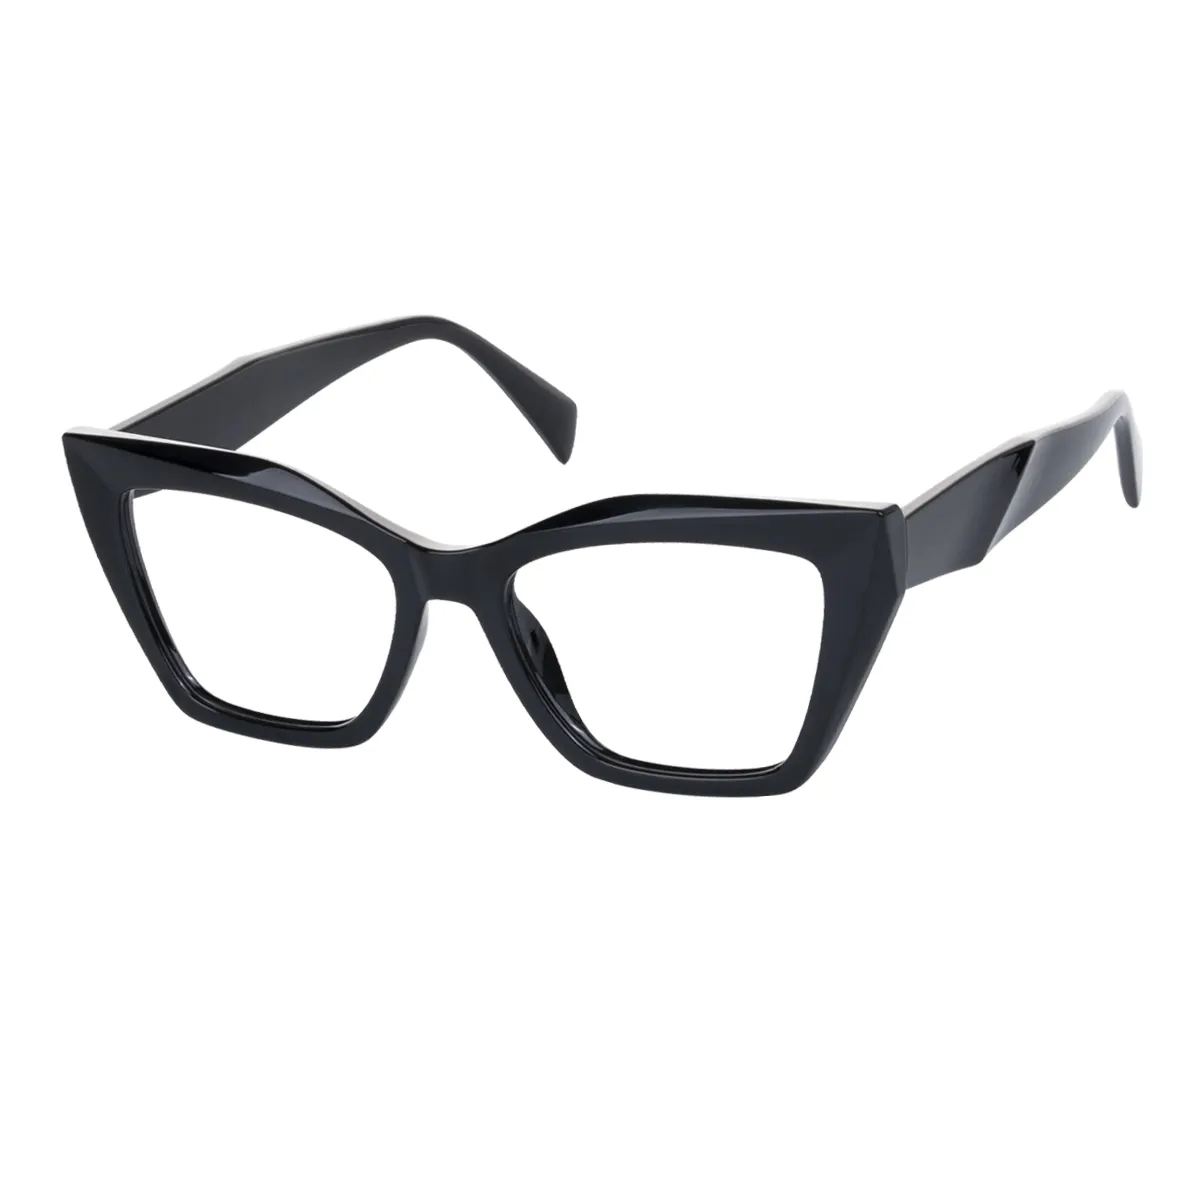 Panthera - Cat-eye Black Glasses for Women